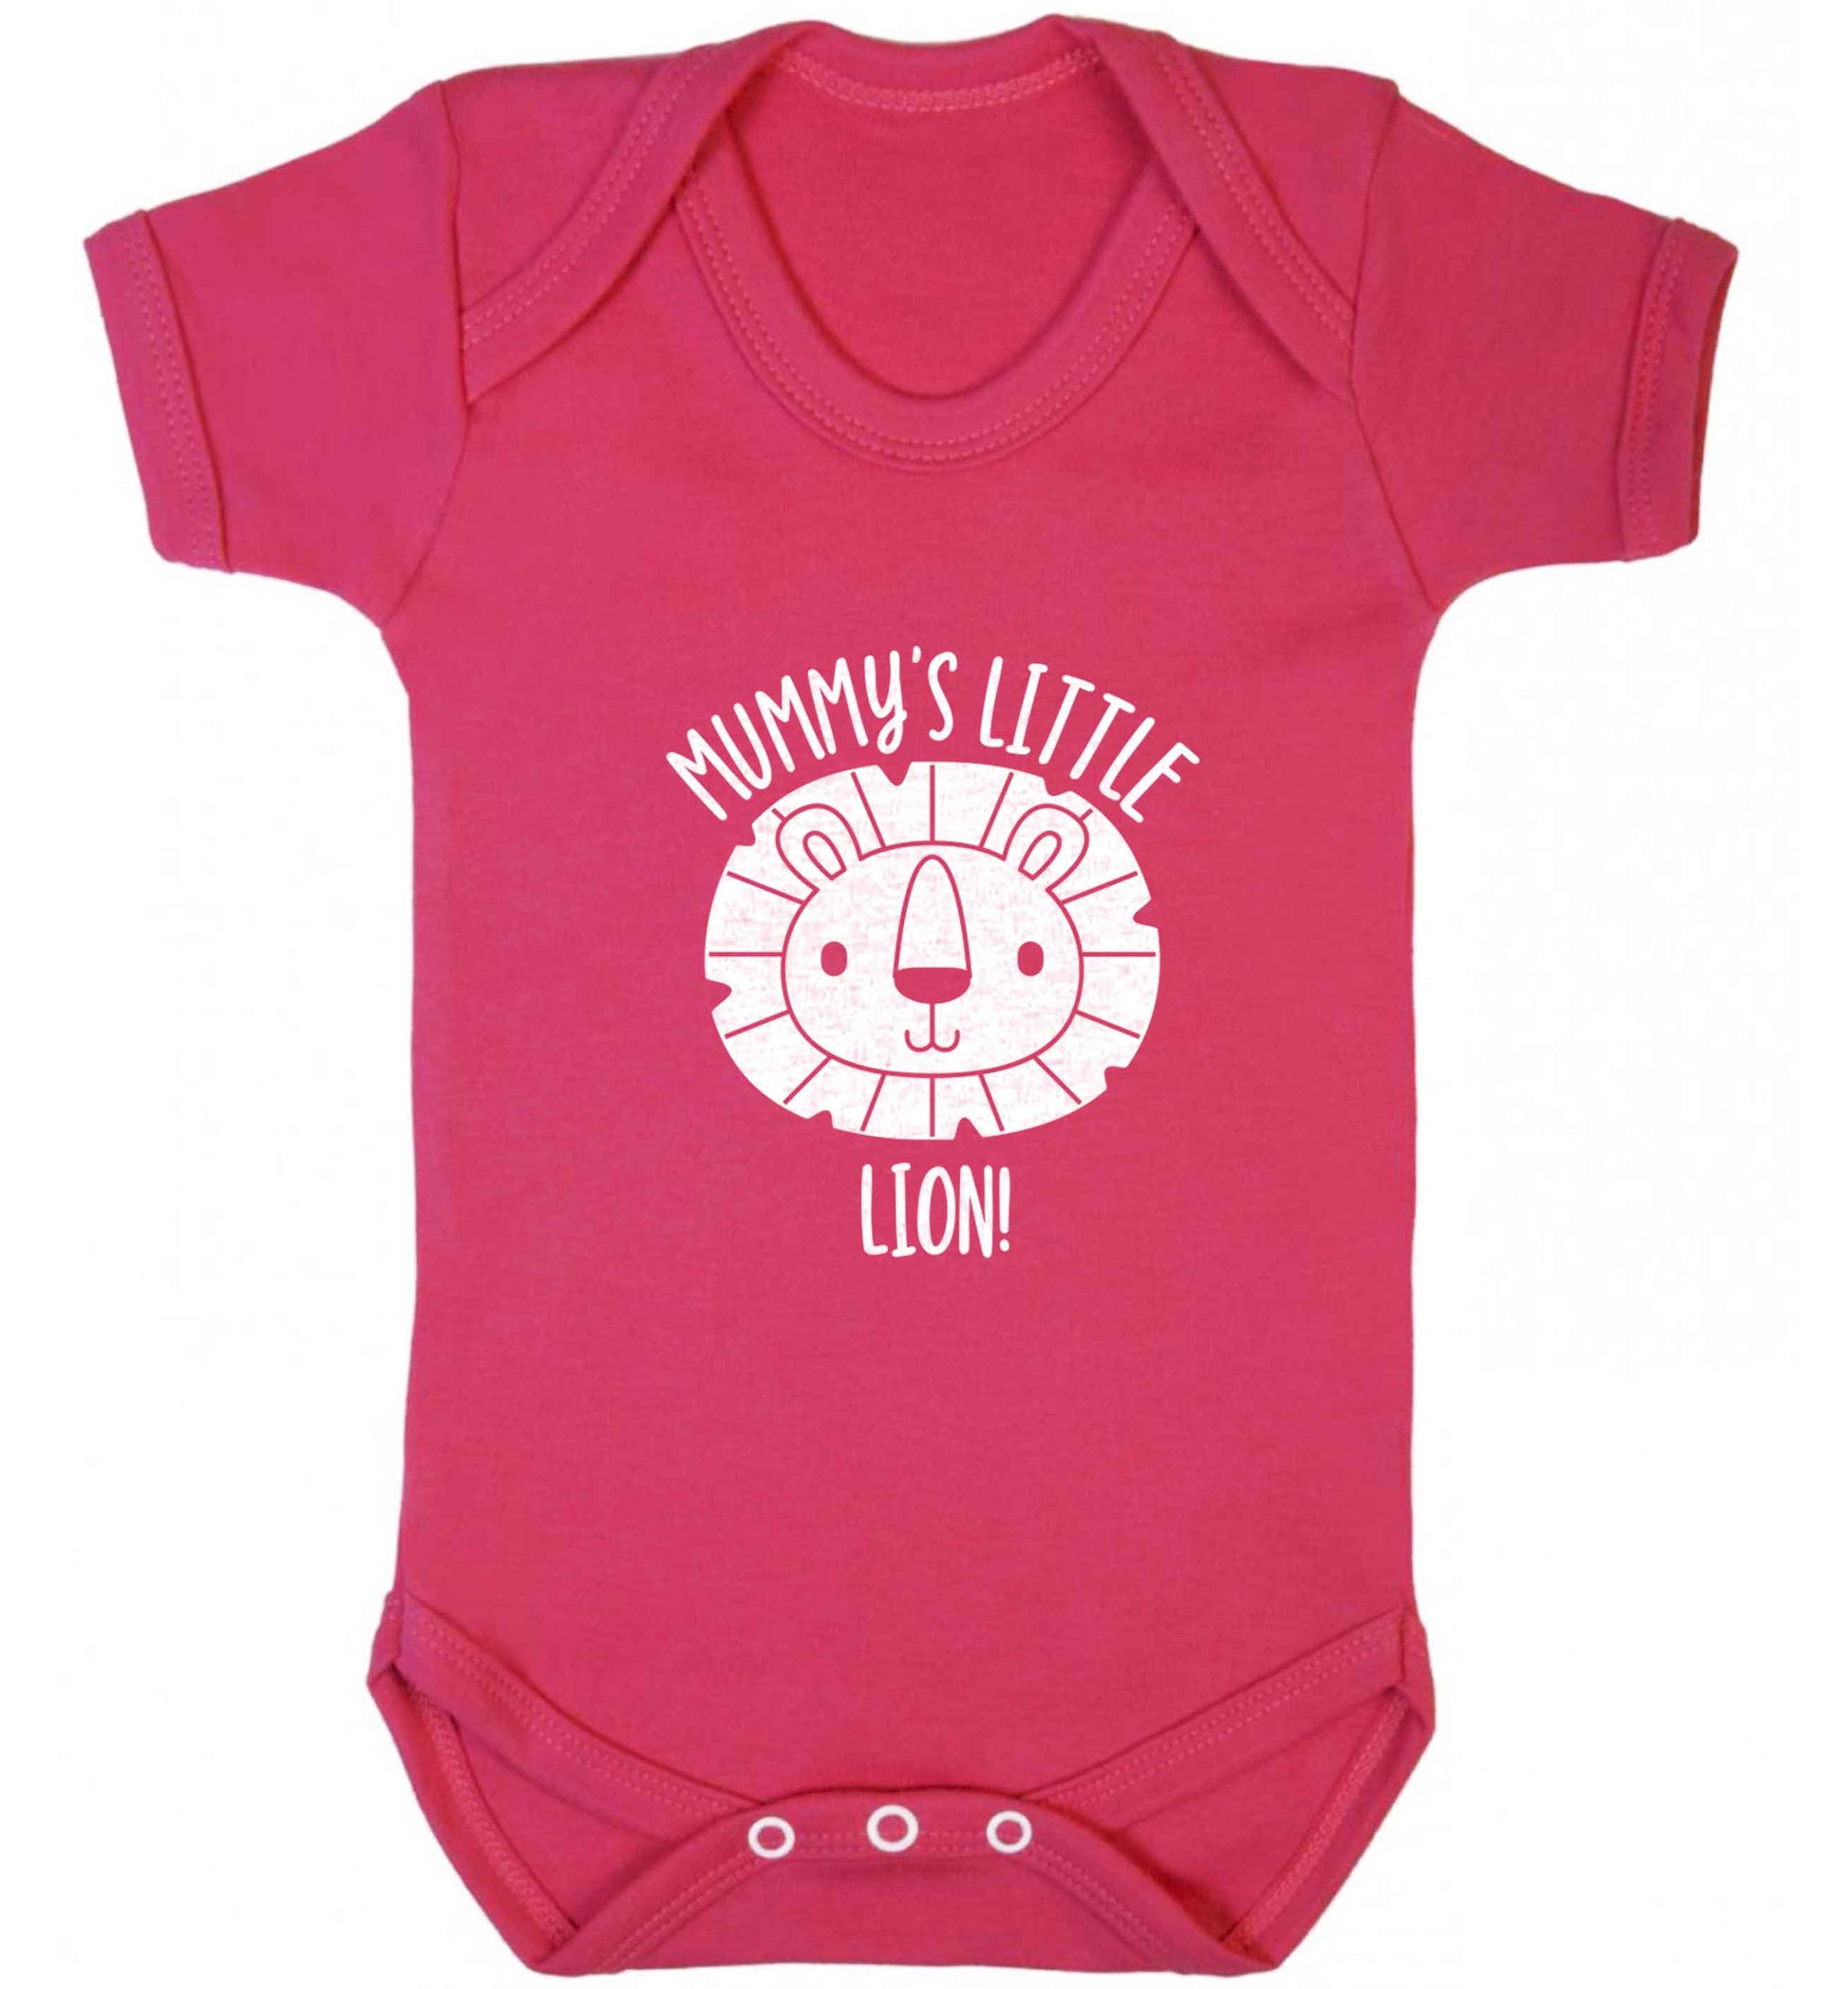 Mummy's little lion baby vest dark pink 18-24 months